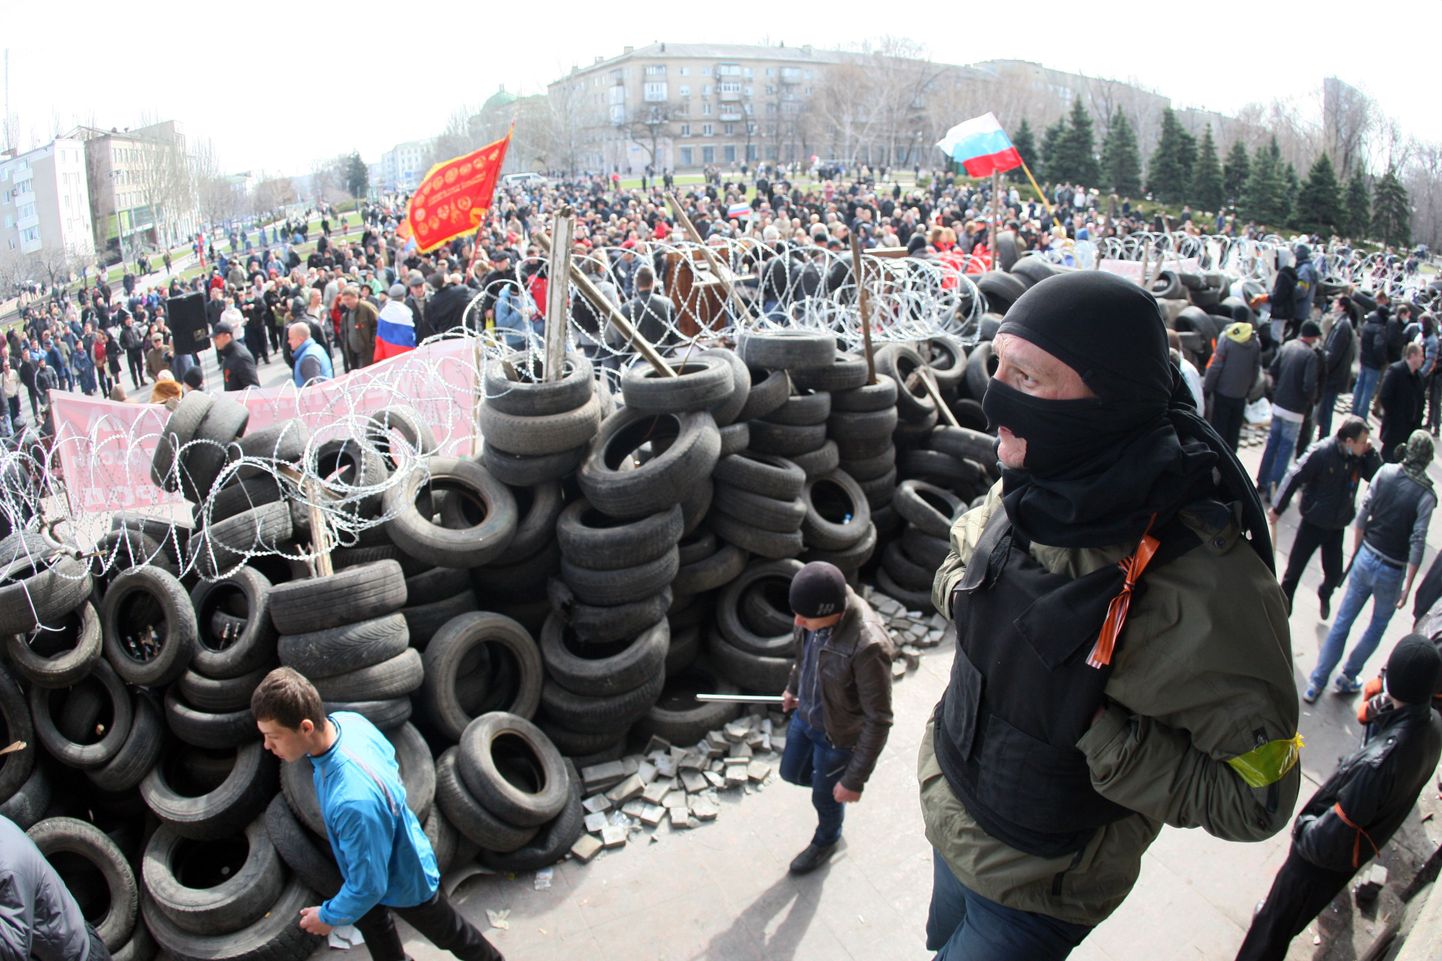 Donetskis kogenenud venemeelne rahvahulk lehvitab nii Vene Föderatsiooni kui Nõukogude Liidu lippe.